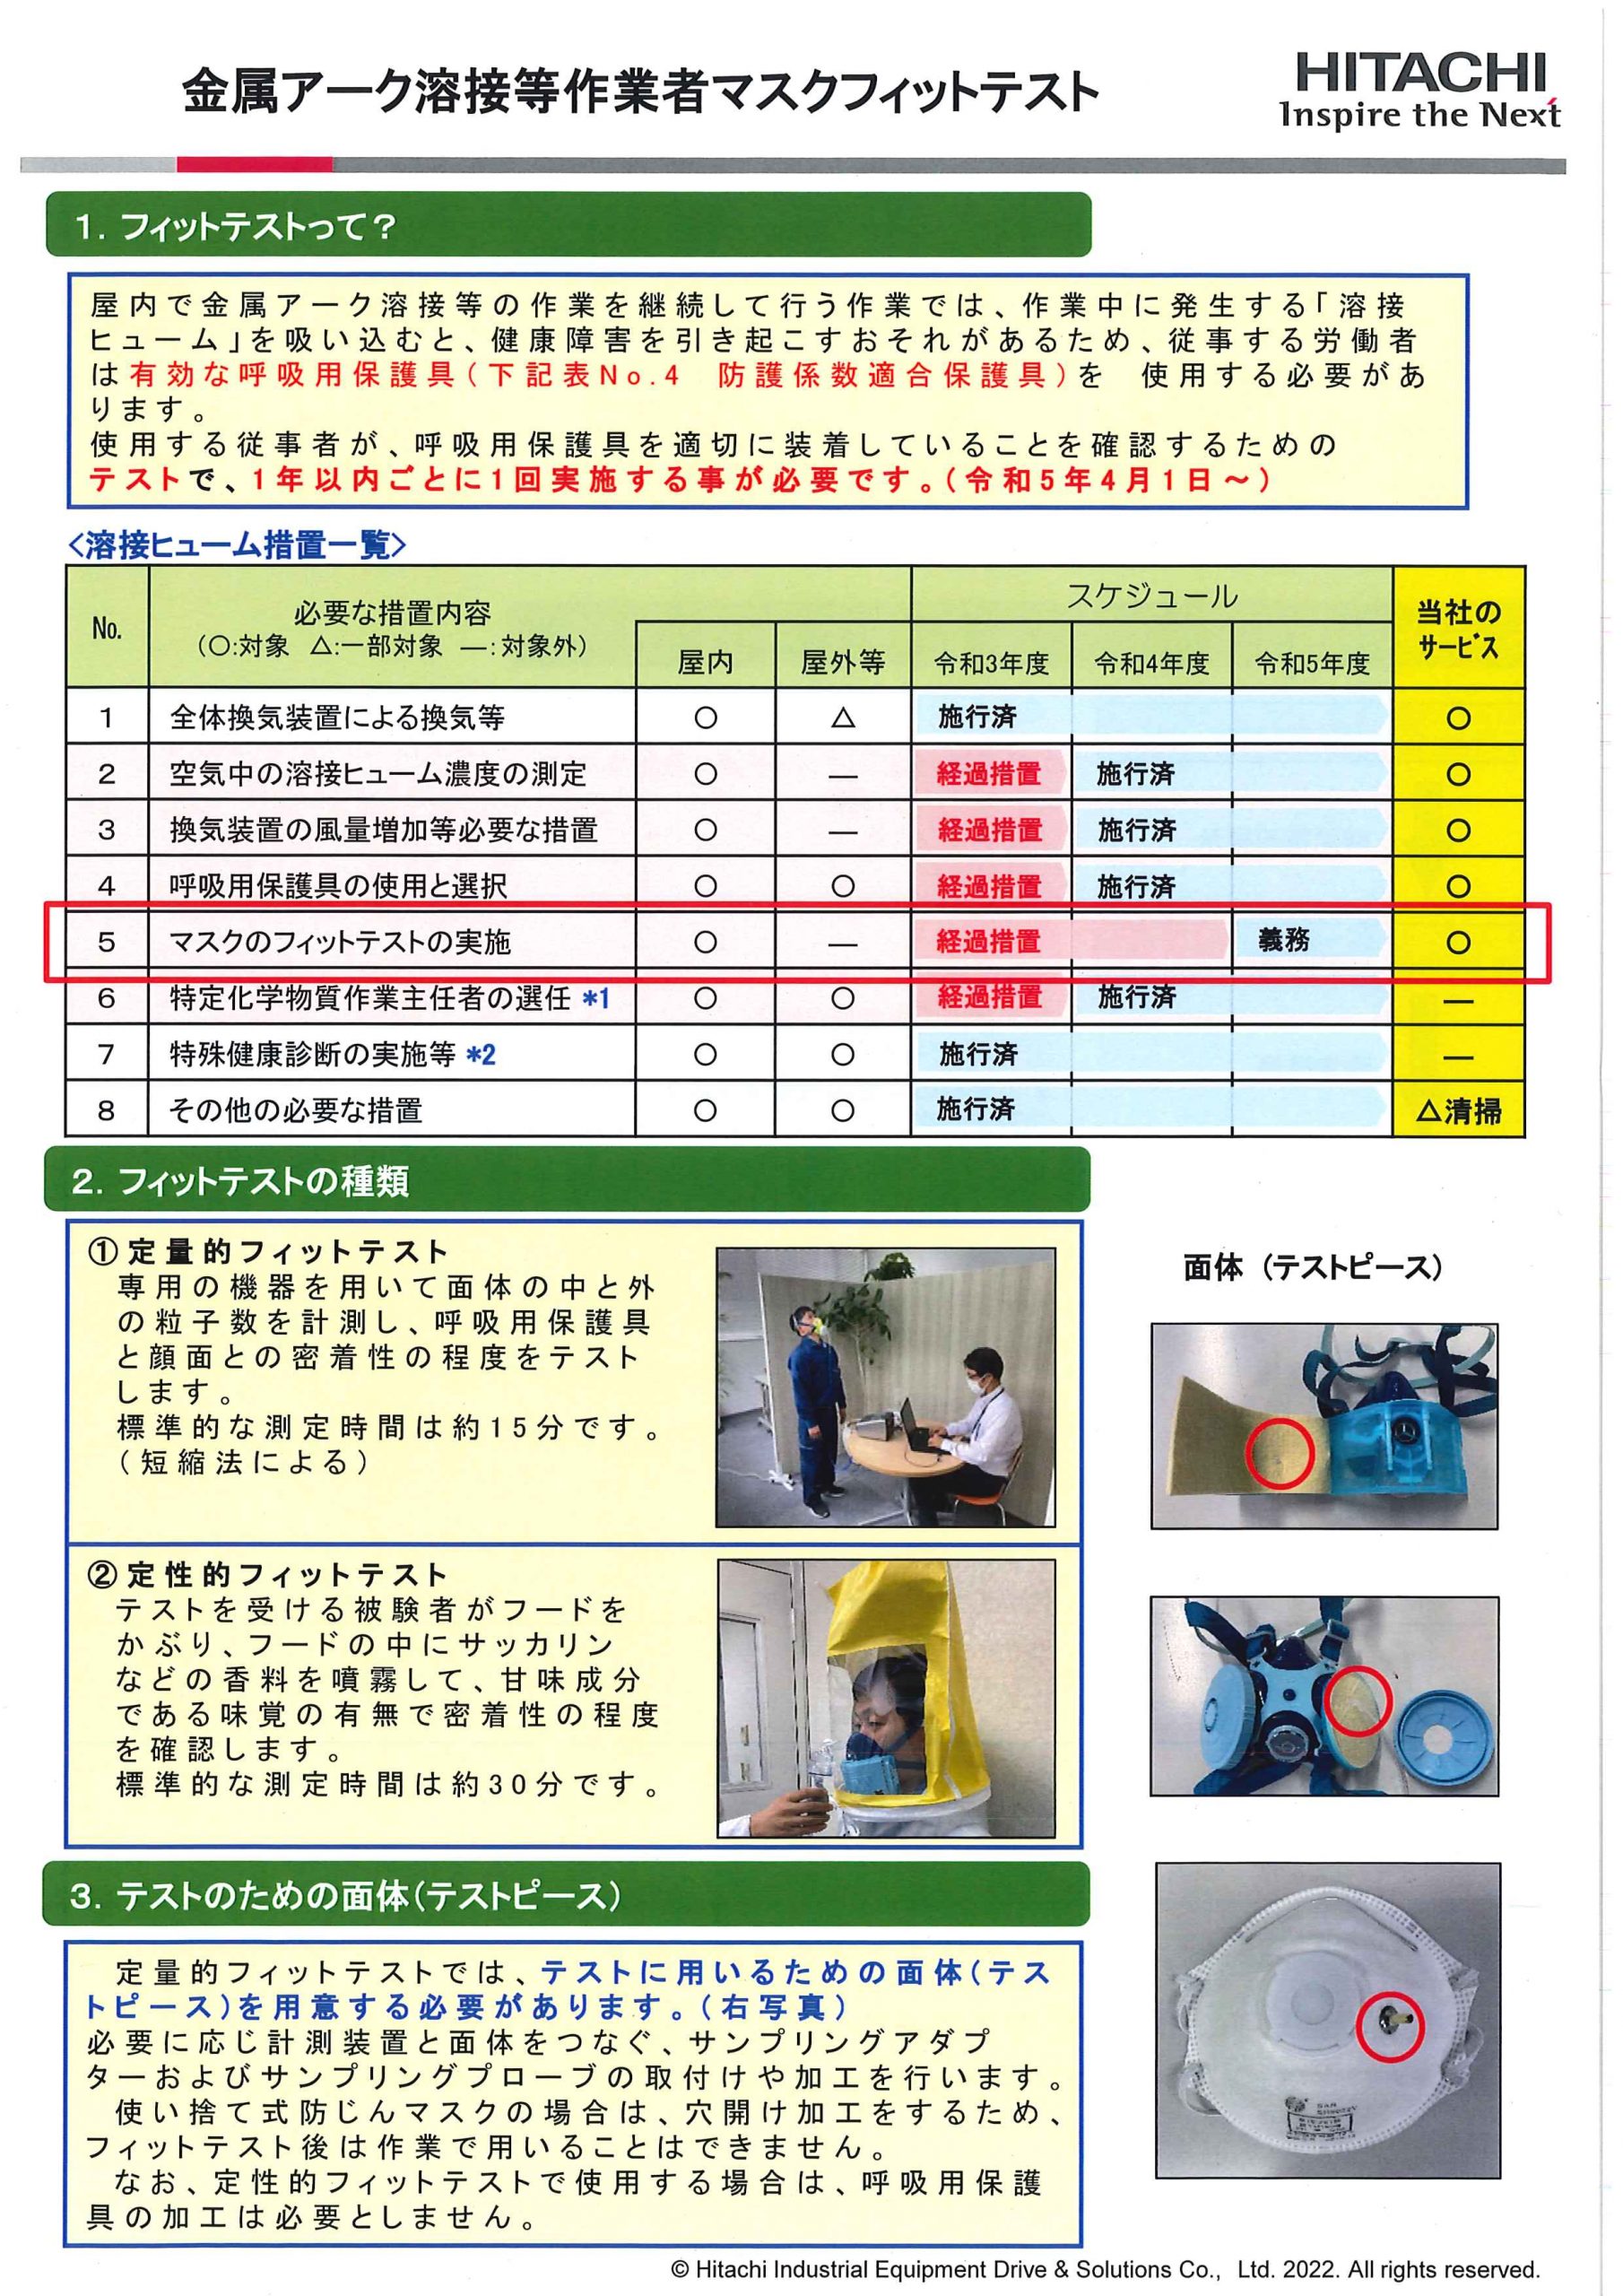 (株)日立産機ドライブ・ソリューションズ 神奈川事業所BLOG『アーク溶接作業者のマスクフィットテストについてご案内します』